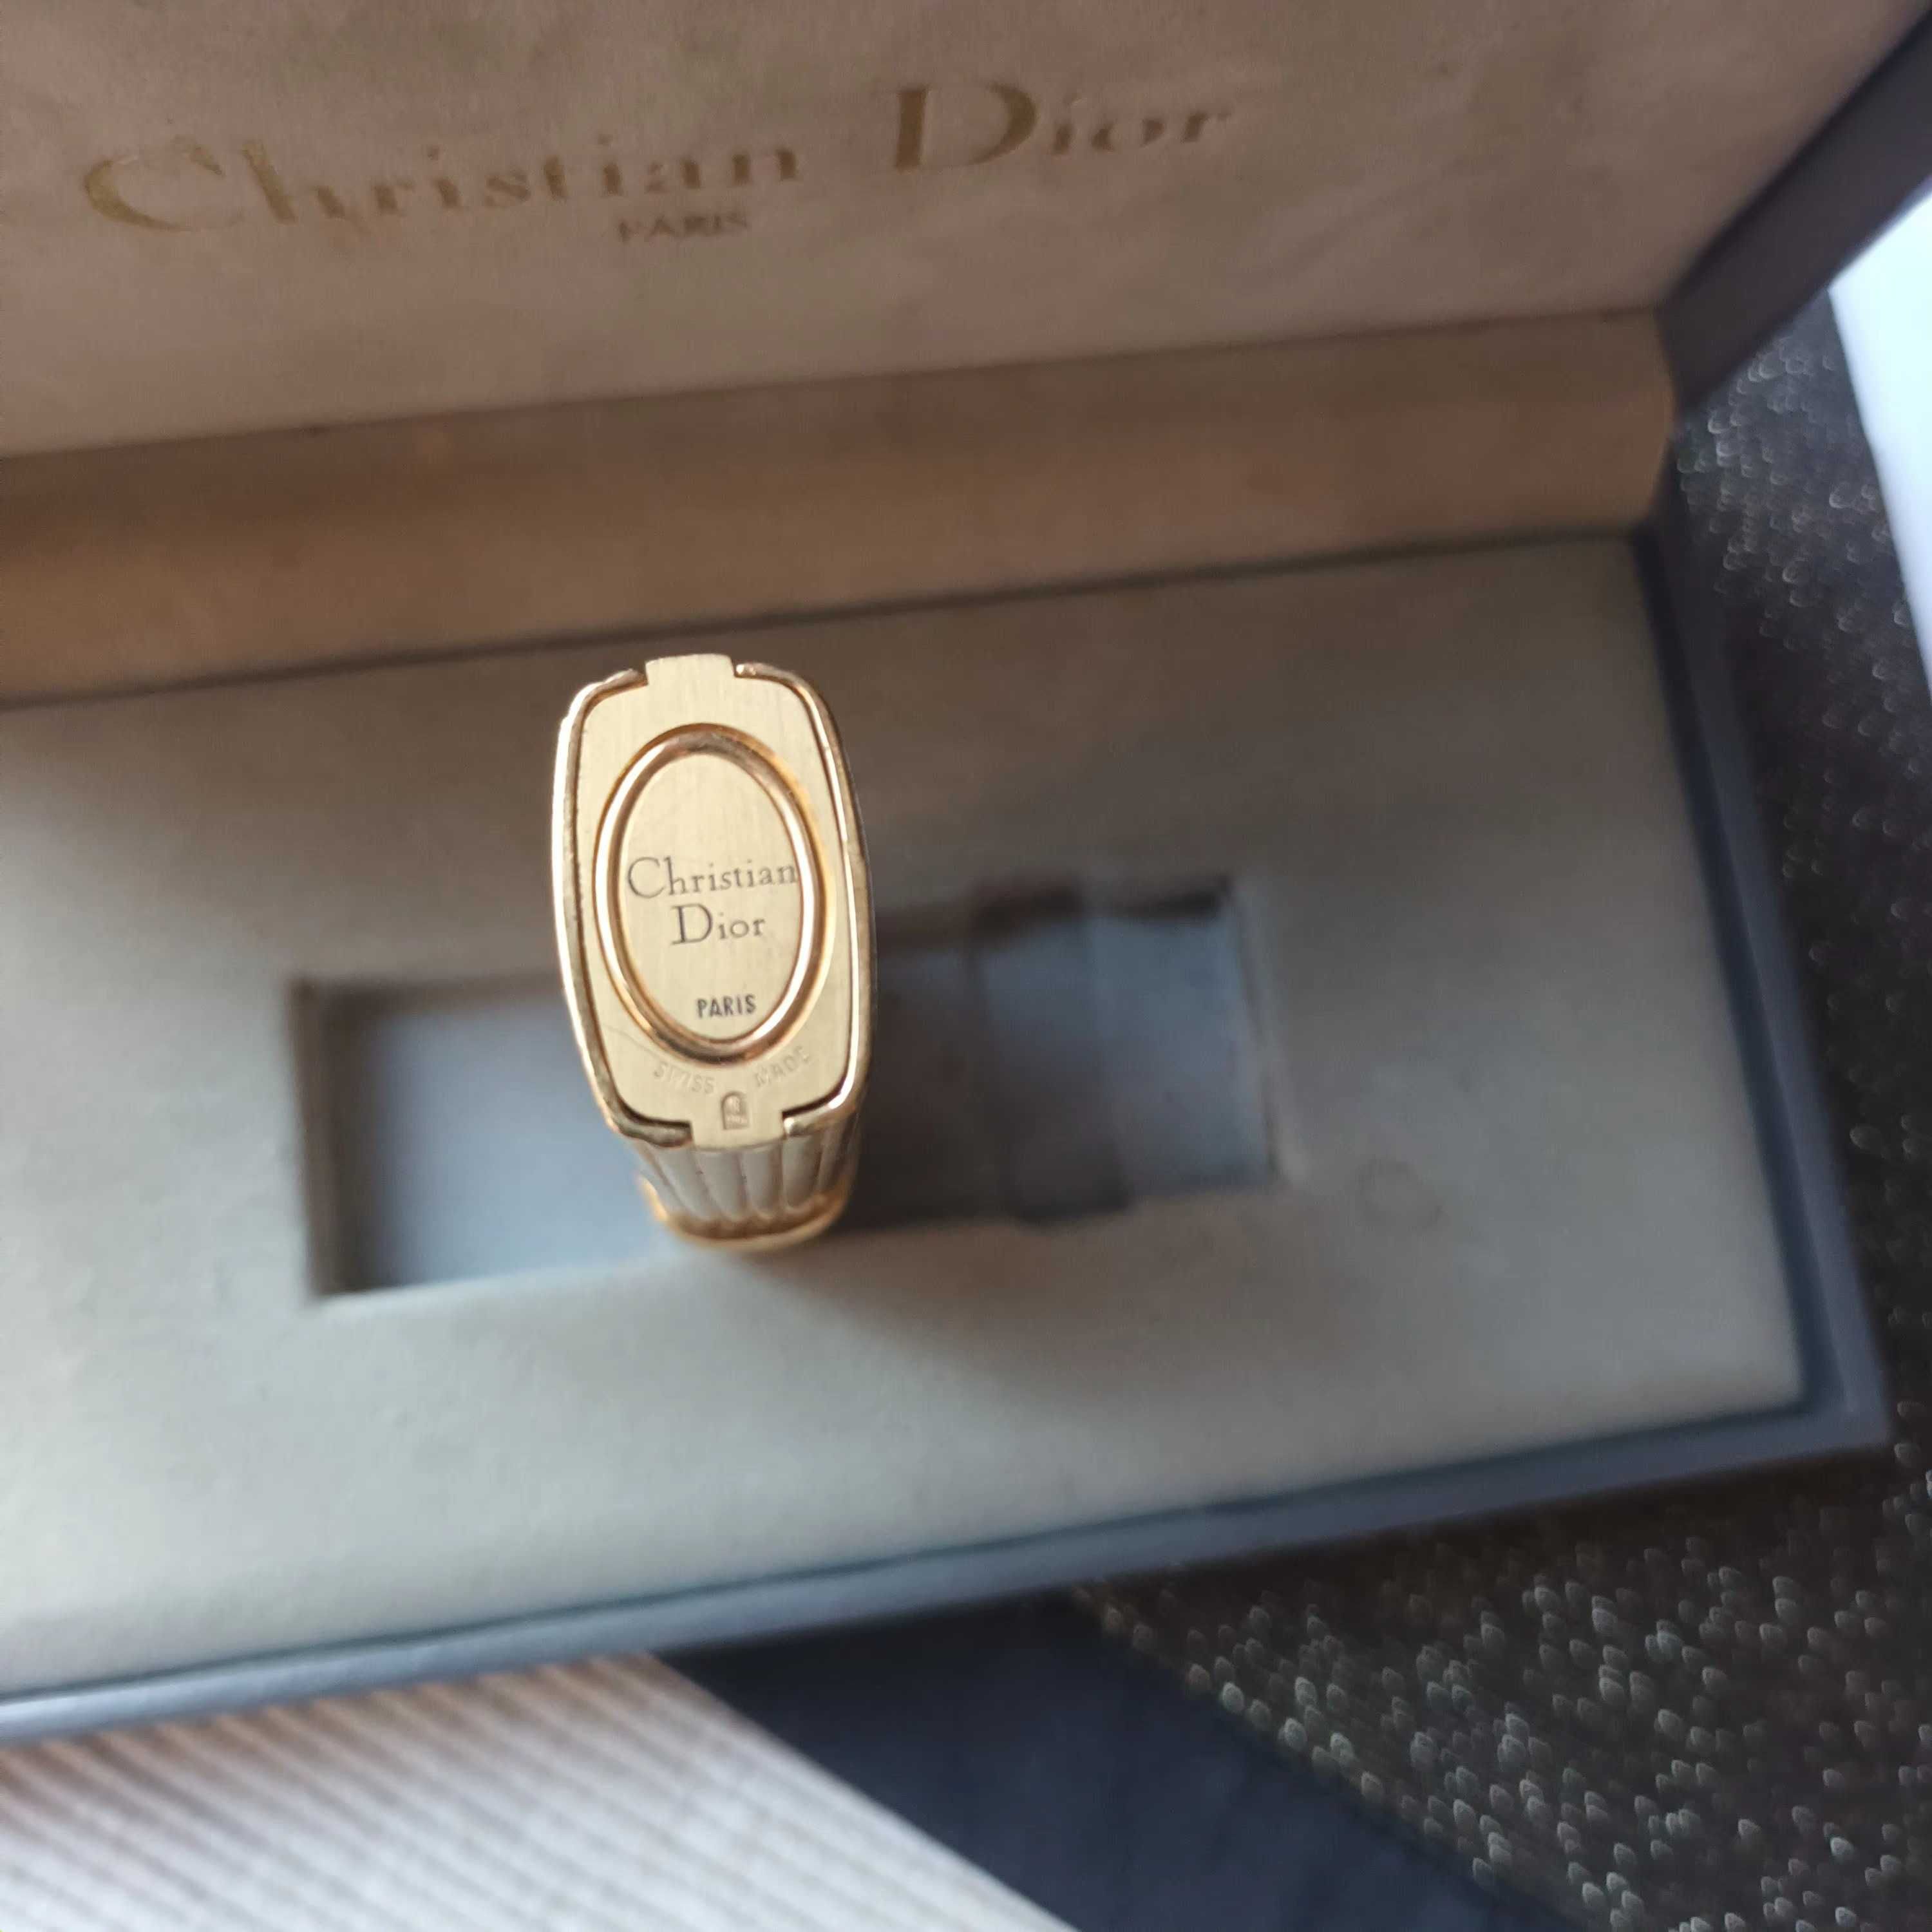 Isqueiro Dior Paris de coleção, de ouro